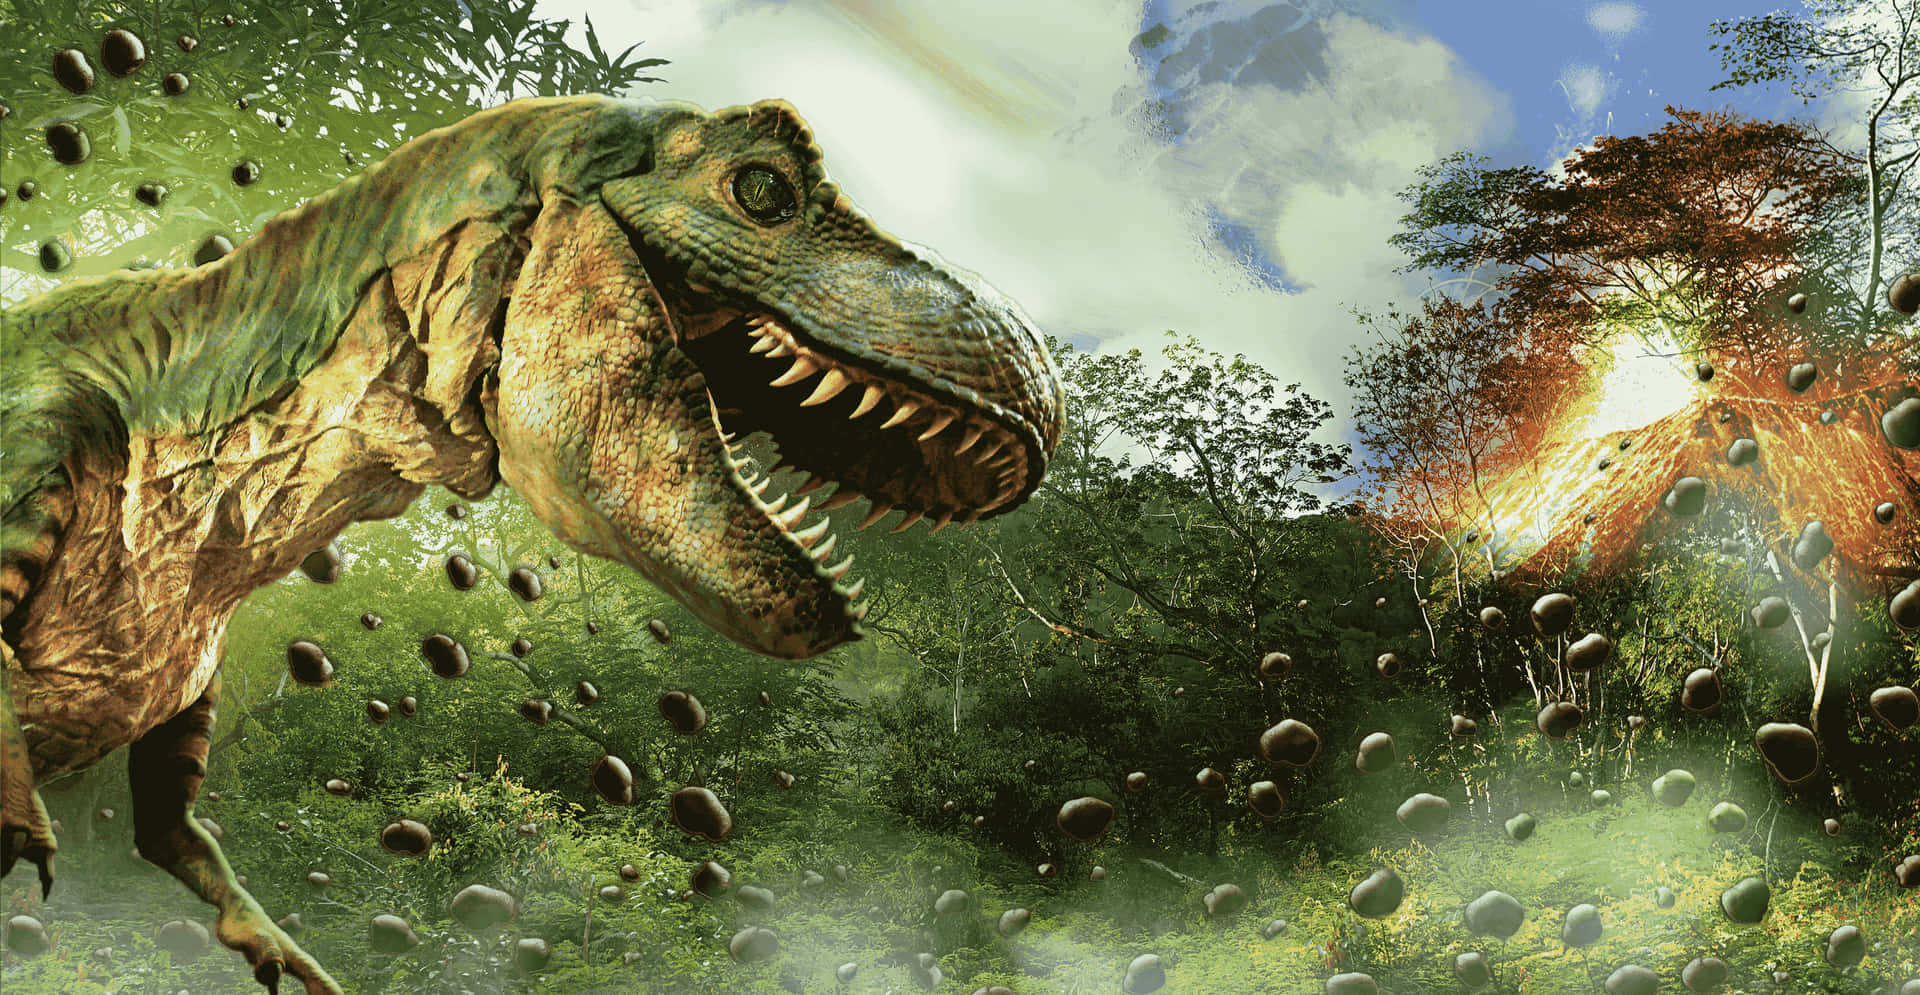 A Dinosaur Roaming the Jurassic Era